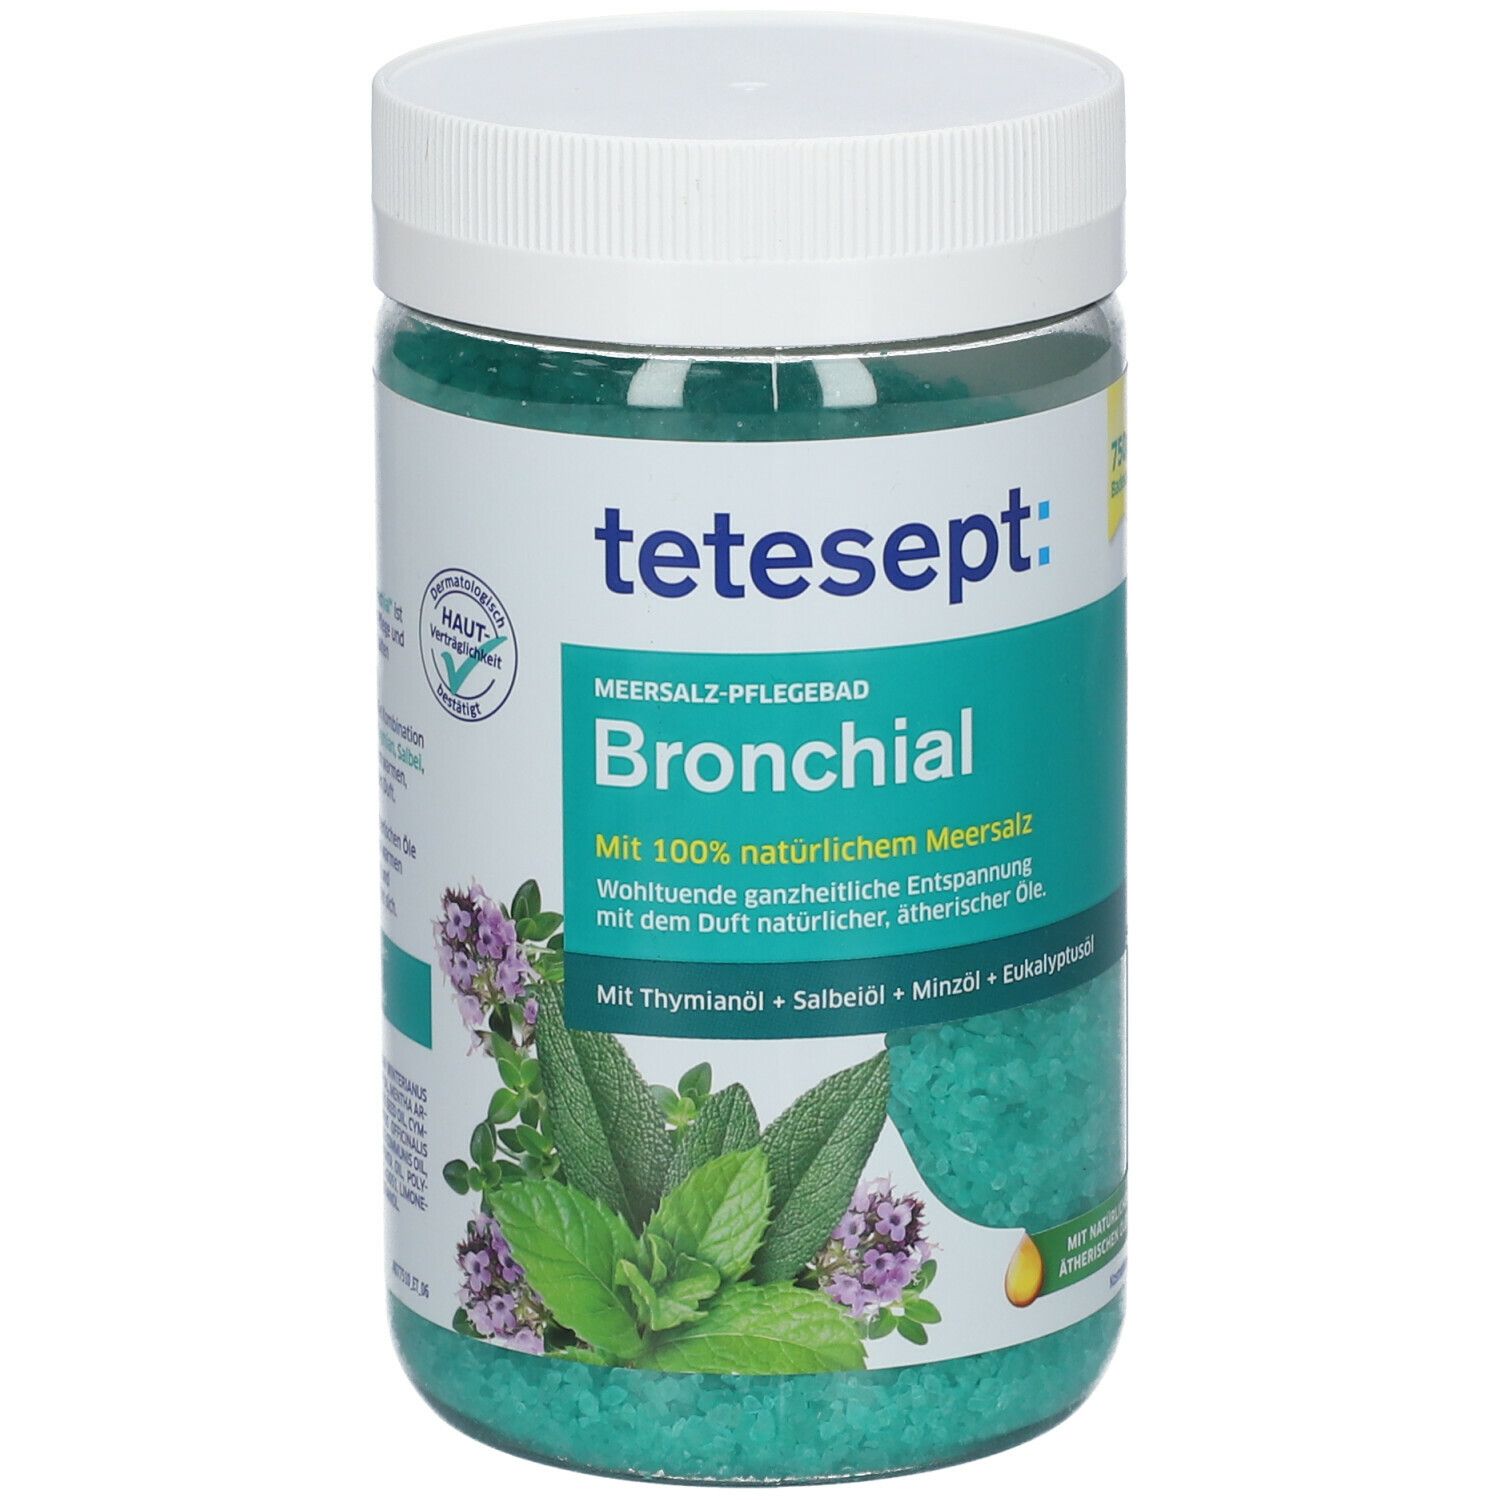 tetesept® Bronchial